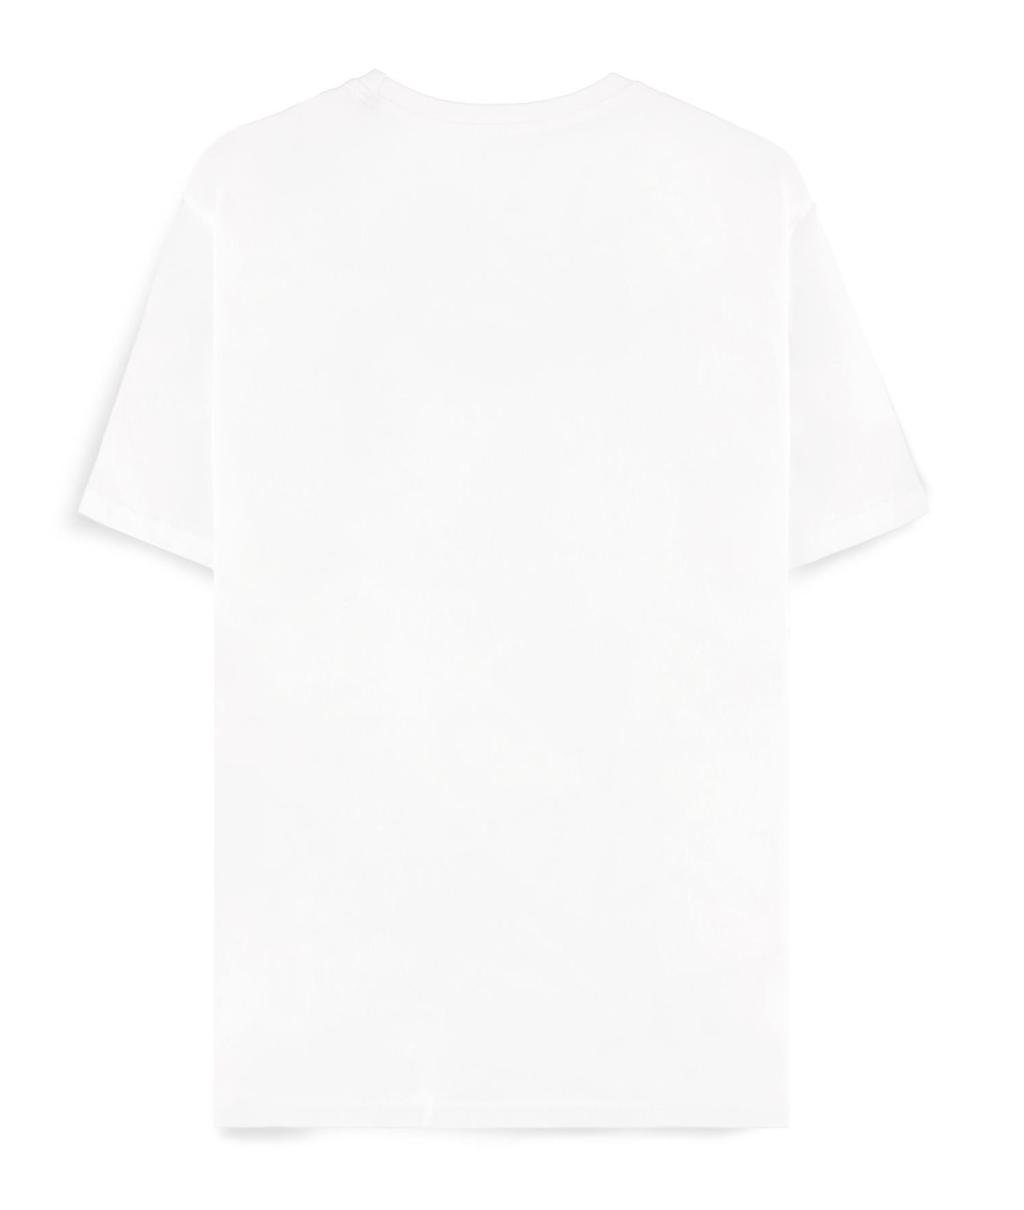 POKEMON - White Venusaur - Men's T-shirt (XS)